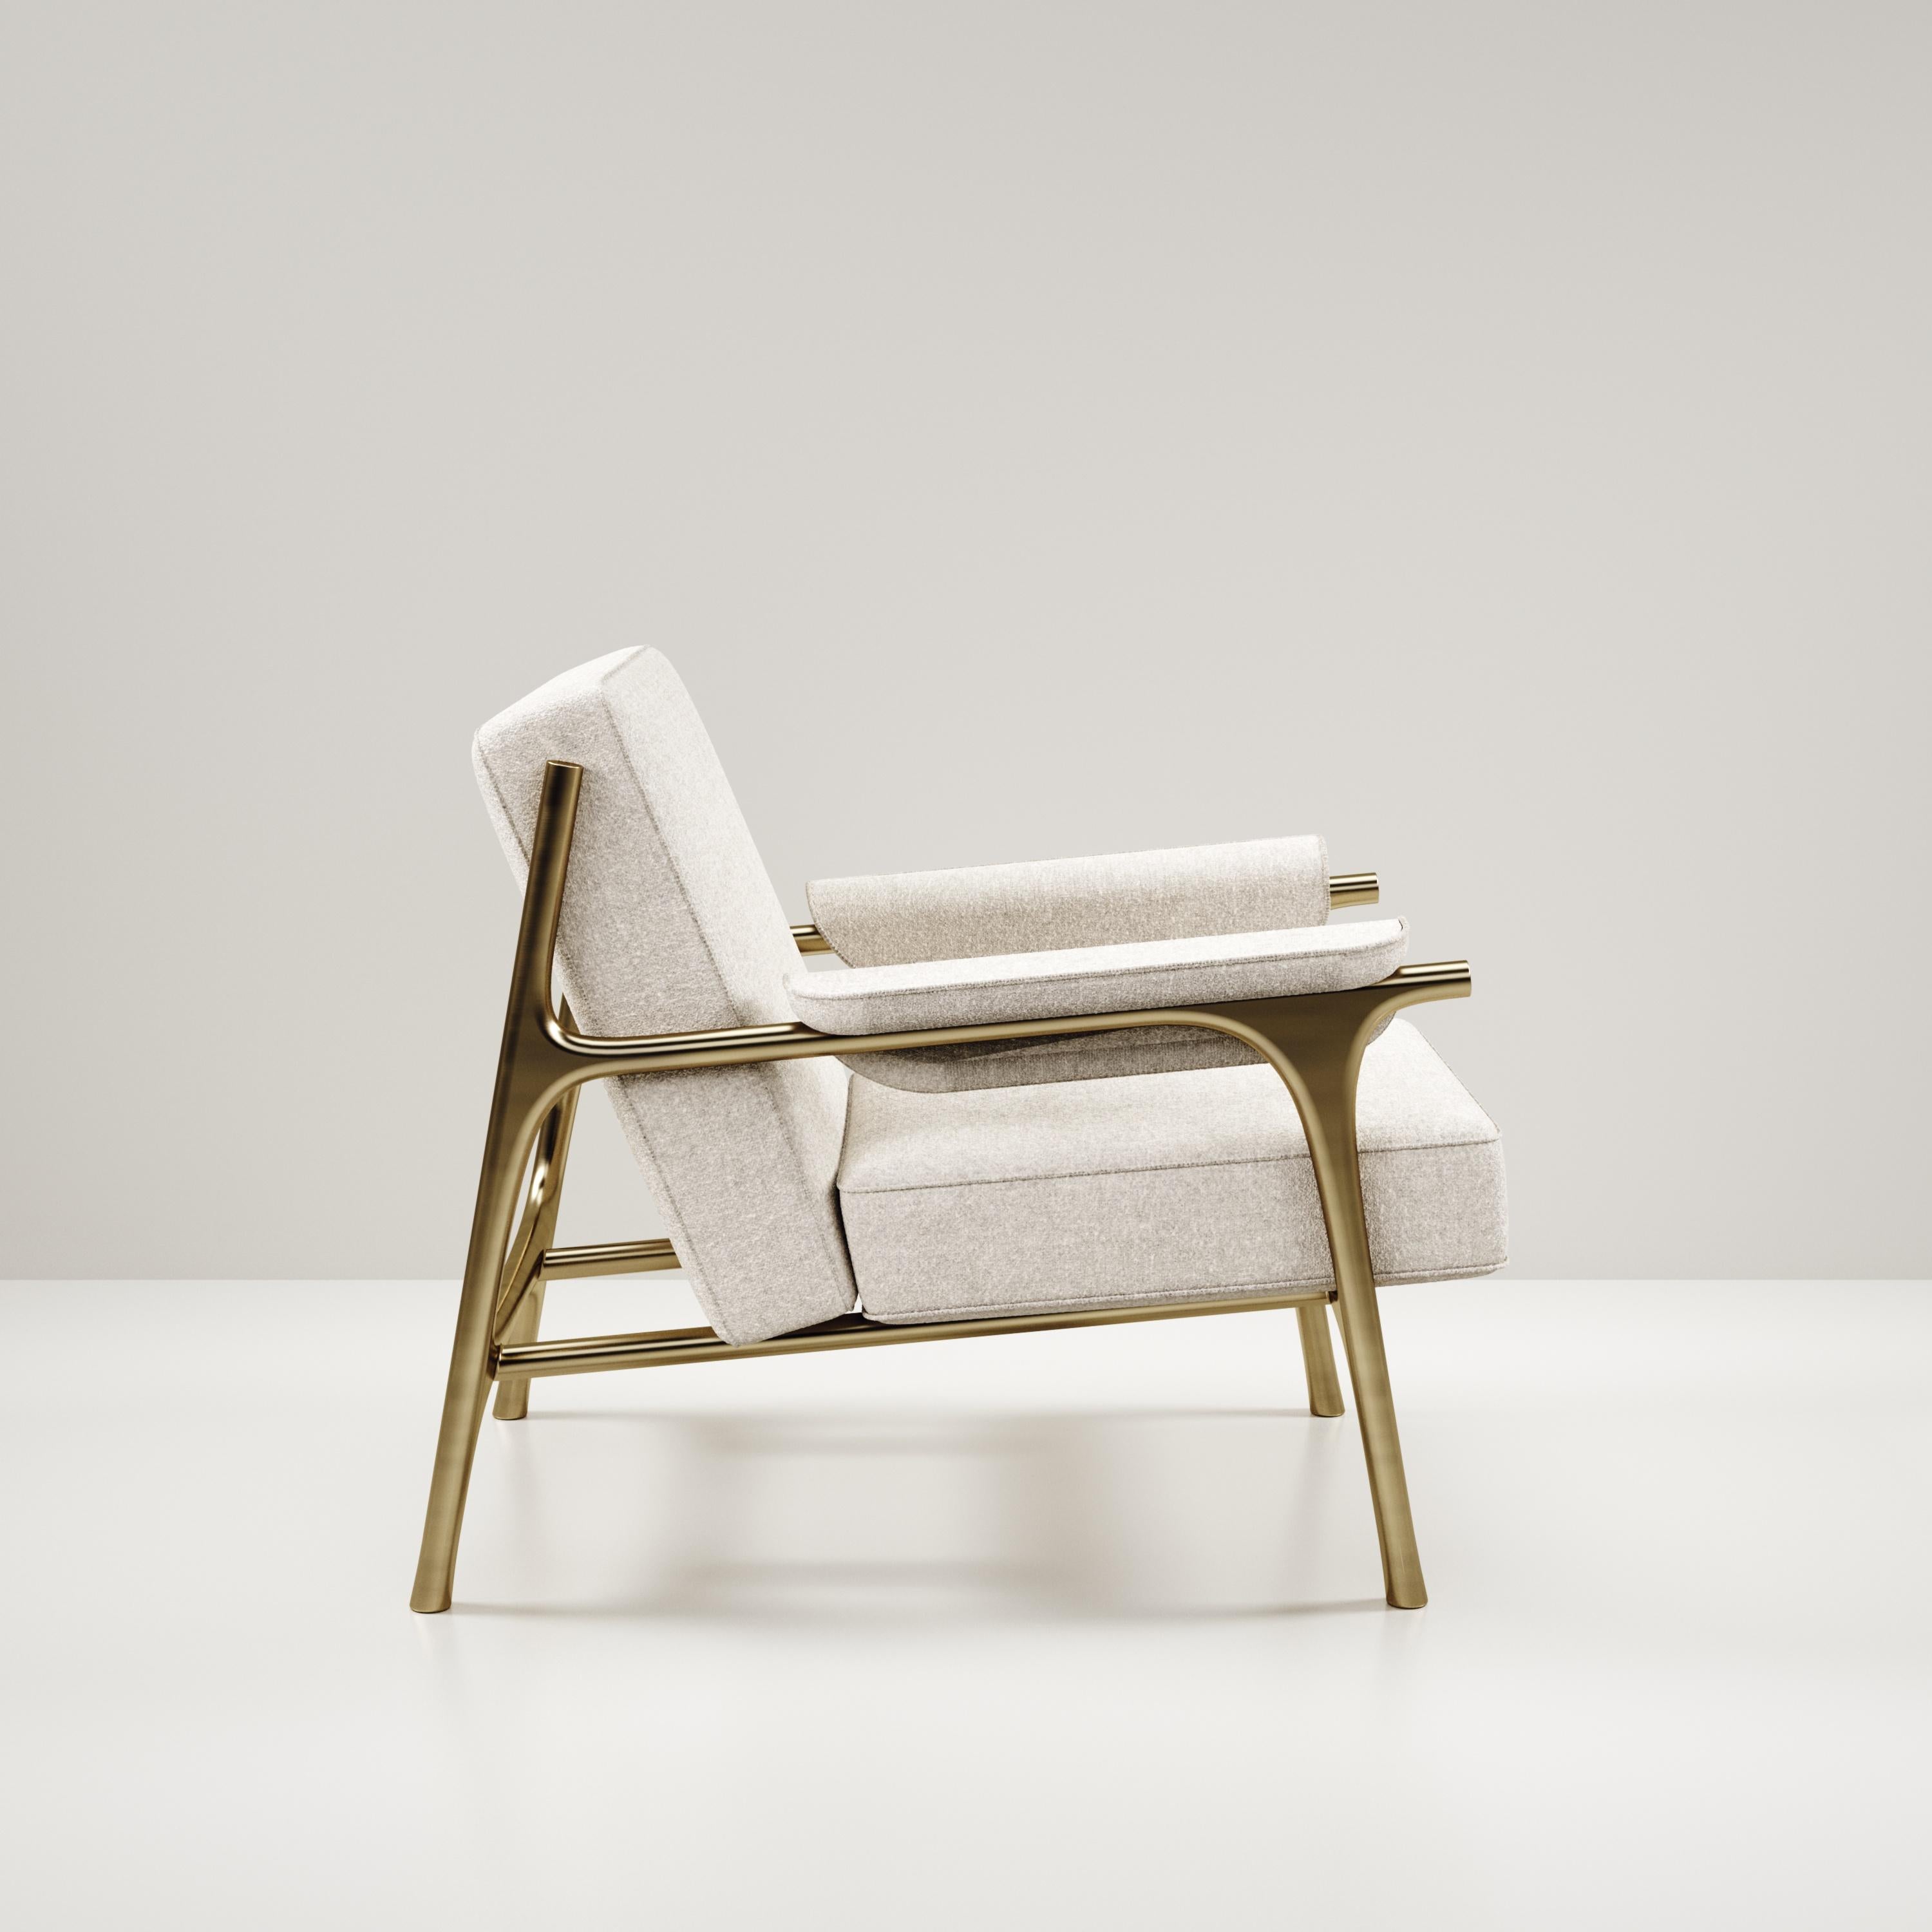 Der Sessel Ramo von R & Y Augousti ist ein elegantes und vielseitiges Möbelstück. Die Polsterung aus cremefarbenem Pierre Frey-Stoff sorgt für Komfort, während das Gestell und die Details aus Messing in Bronze-Patina eine einzigartige Ästhetik